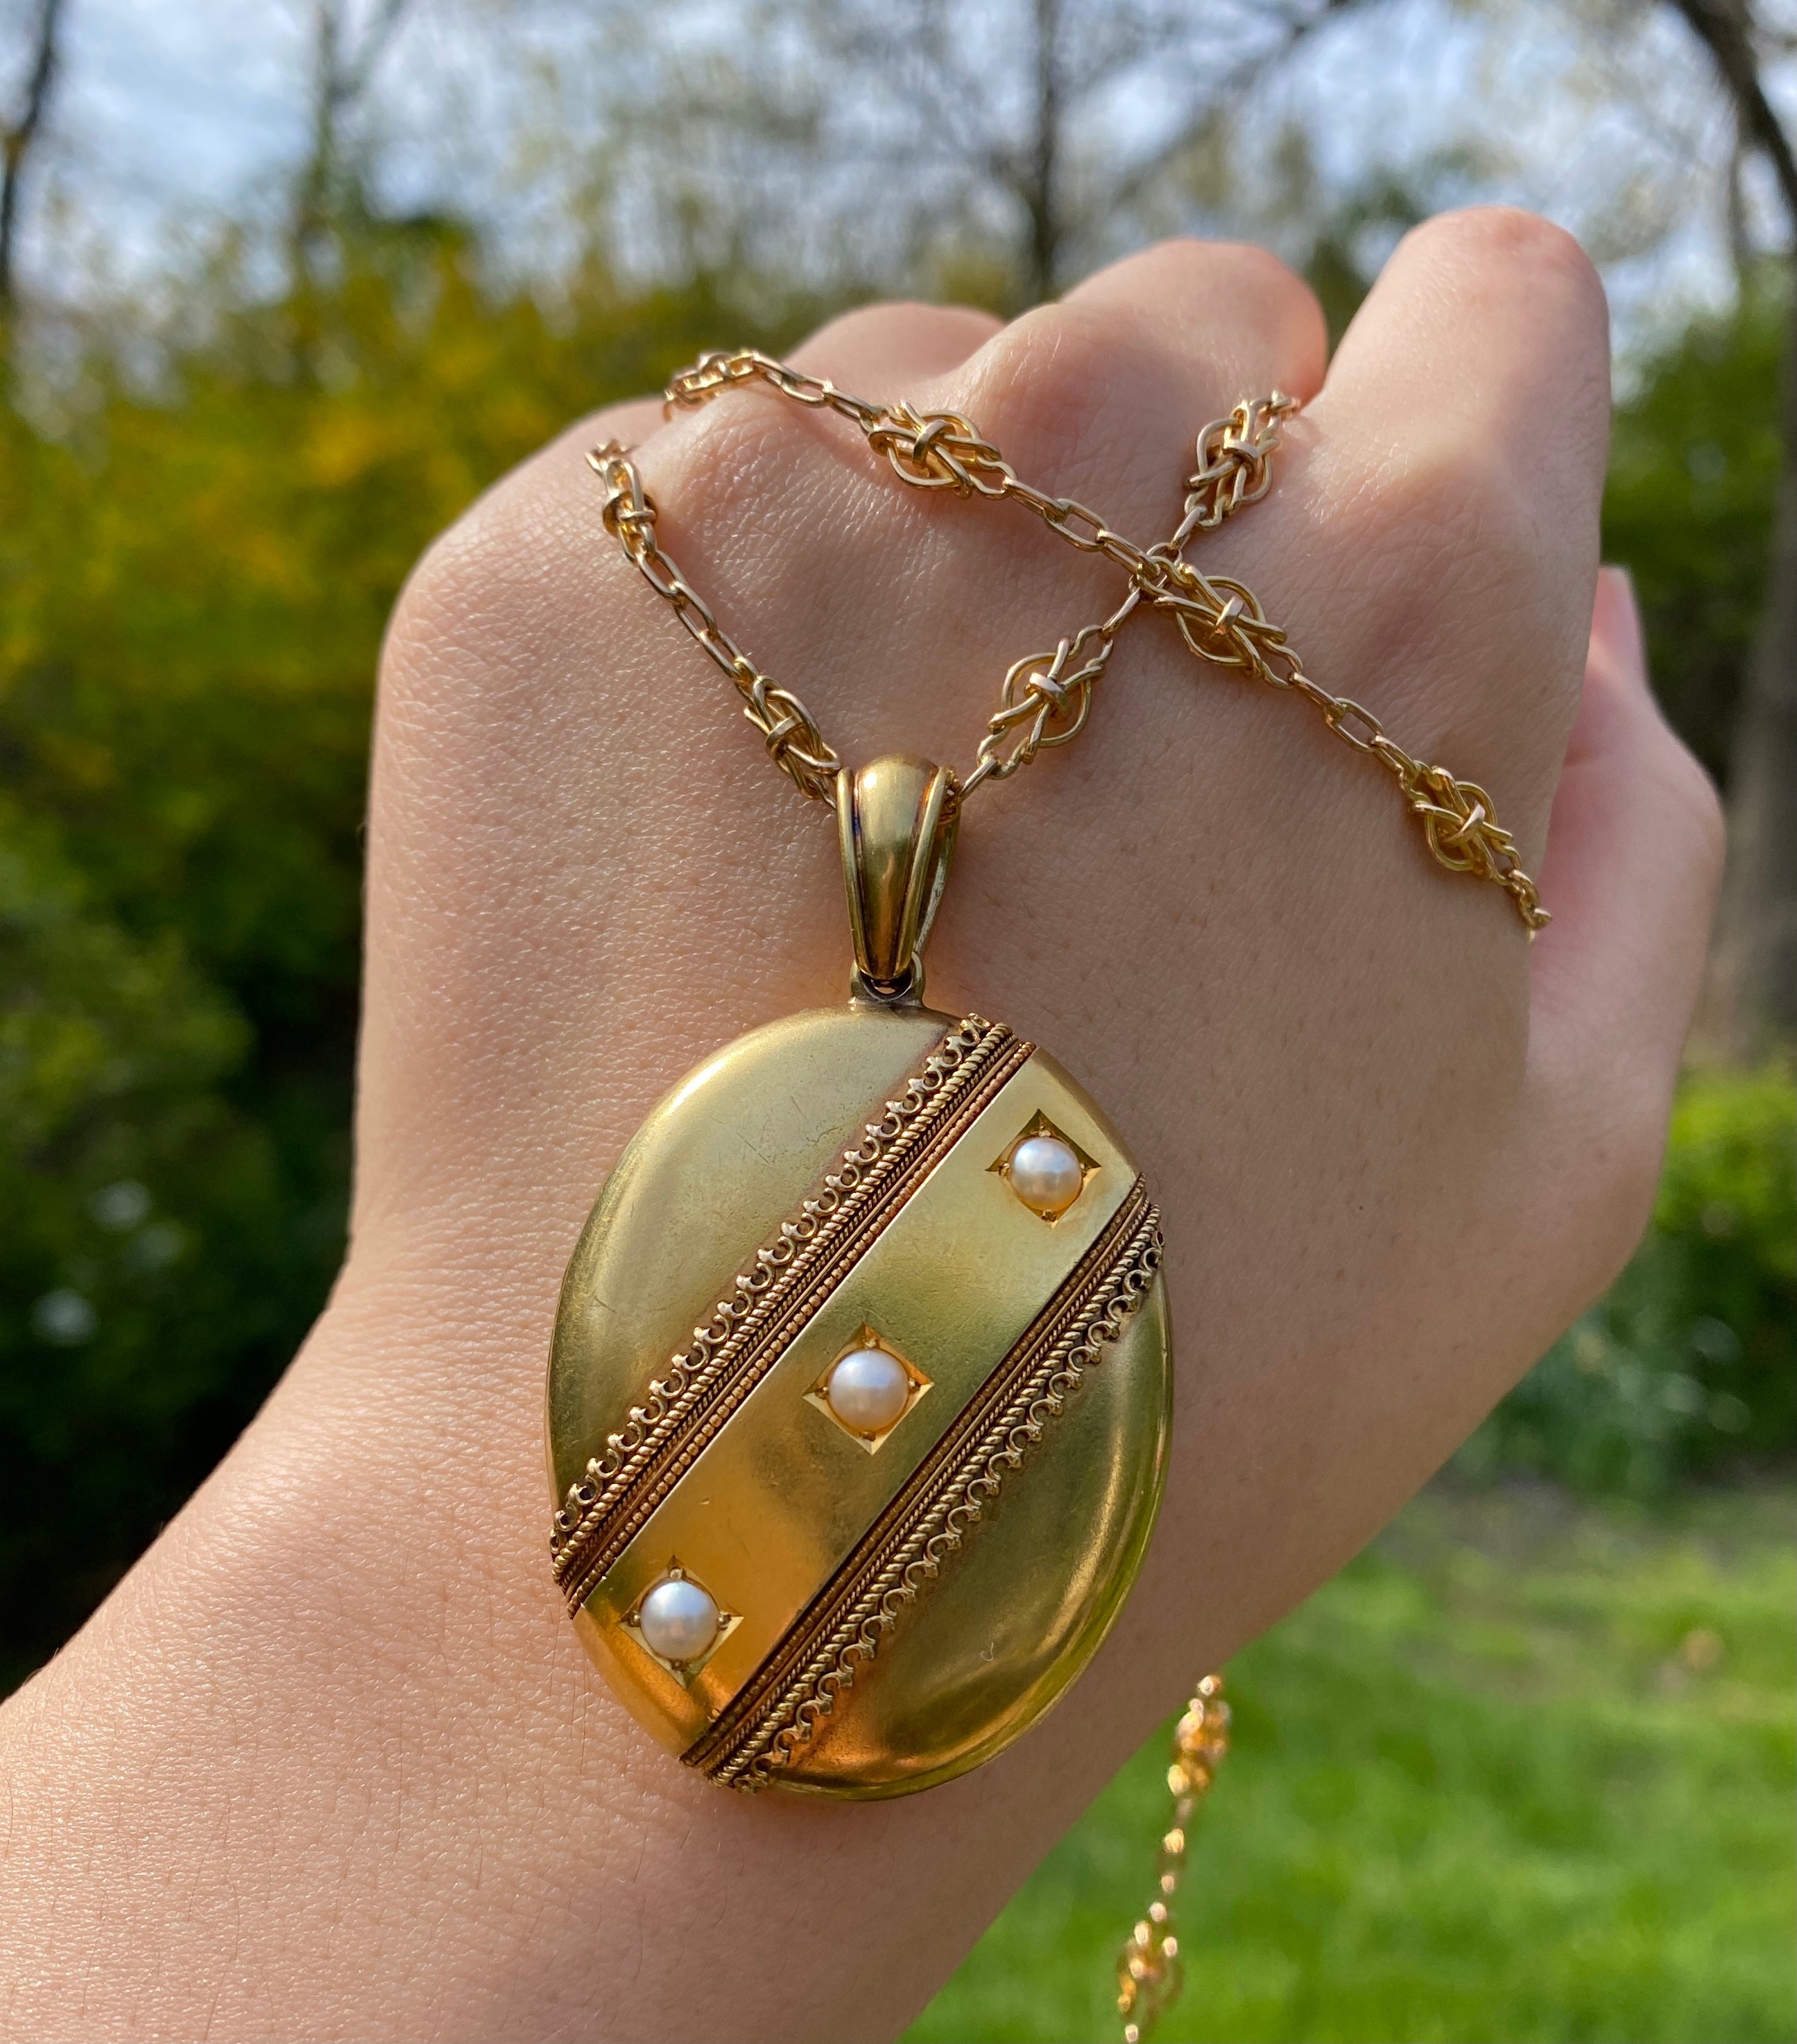 Vintage Heart Locket Necklace – Dandelion Jewelry